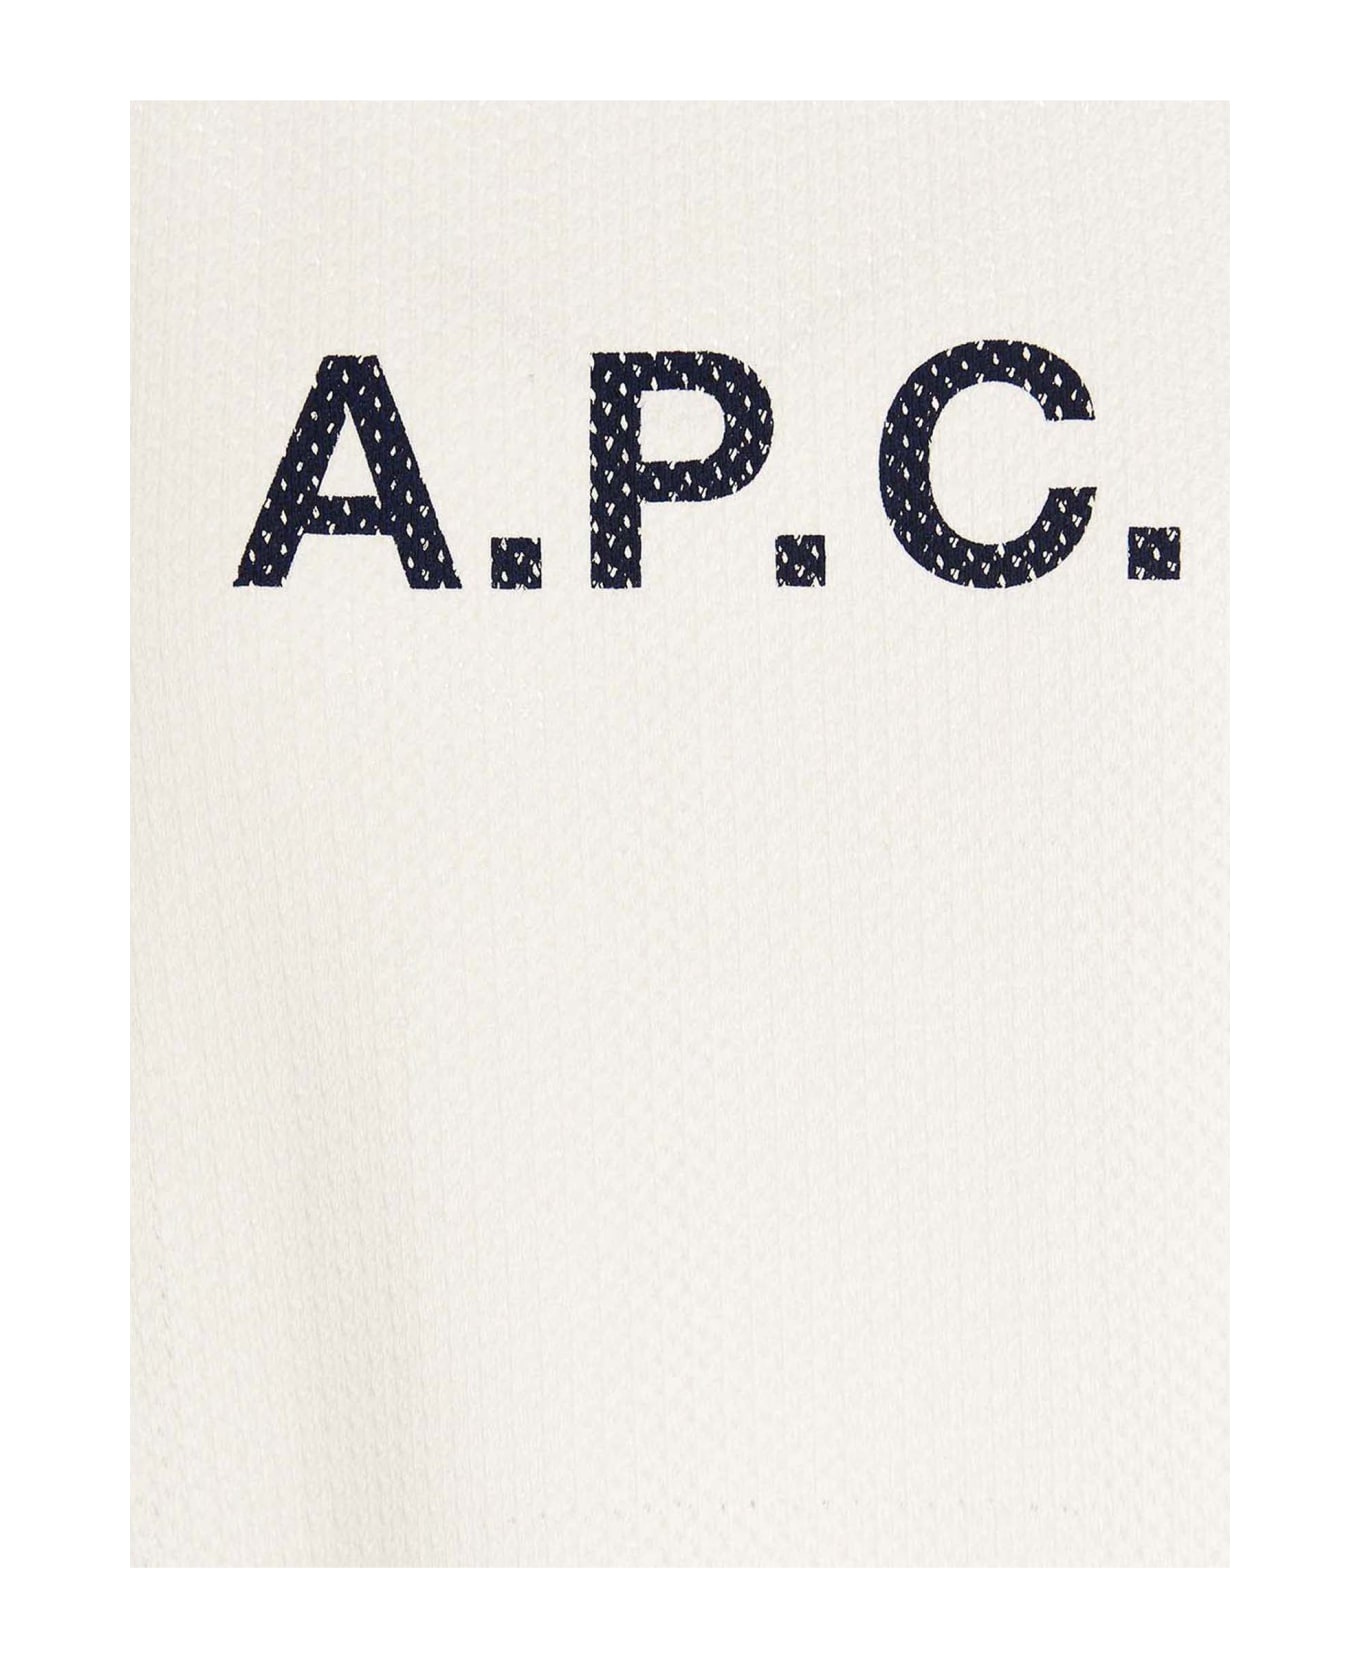 A.P.C. Moran T-shirt - Ecru シャツ